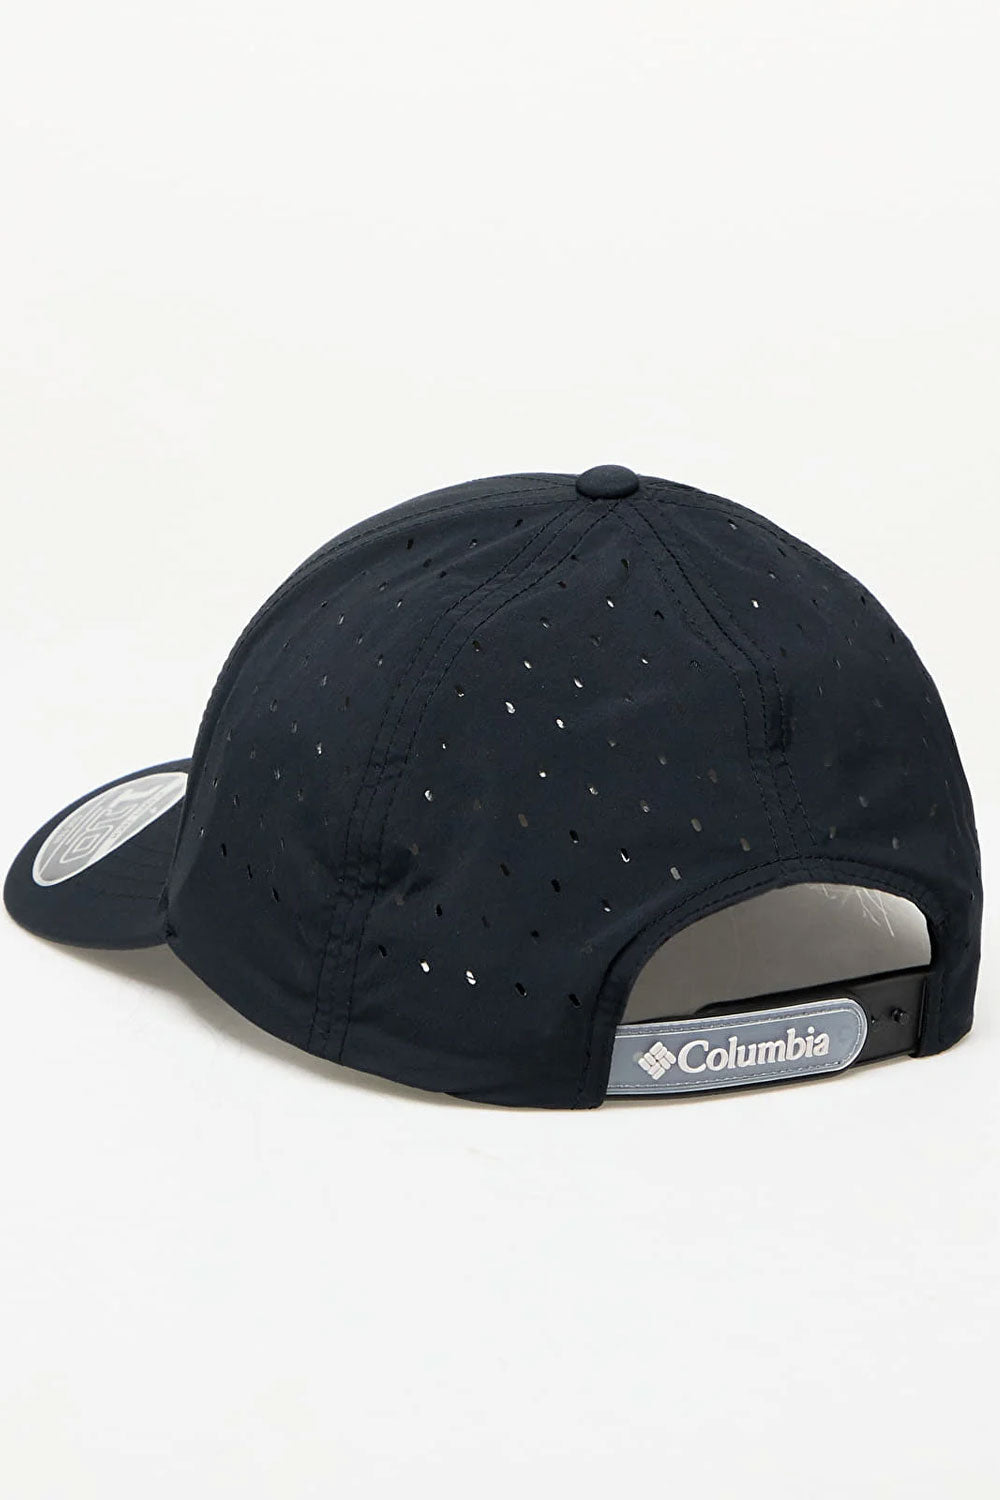 קולומביה כובע מצחייה Hike 110 בצבע שחור לגברים-Columbia-One size-נאקו